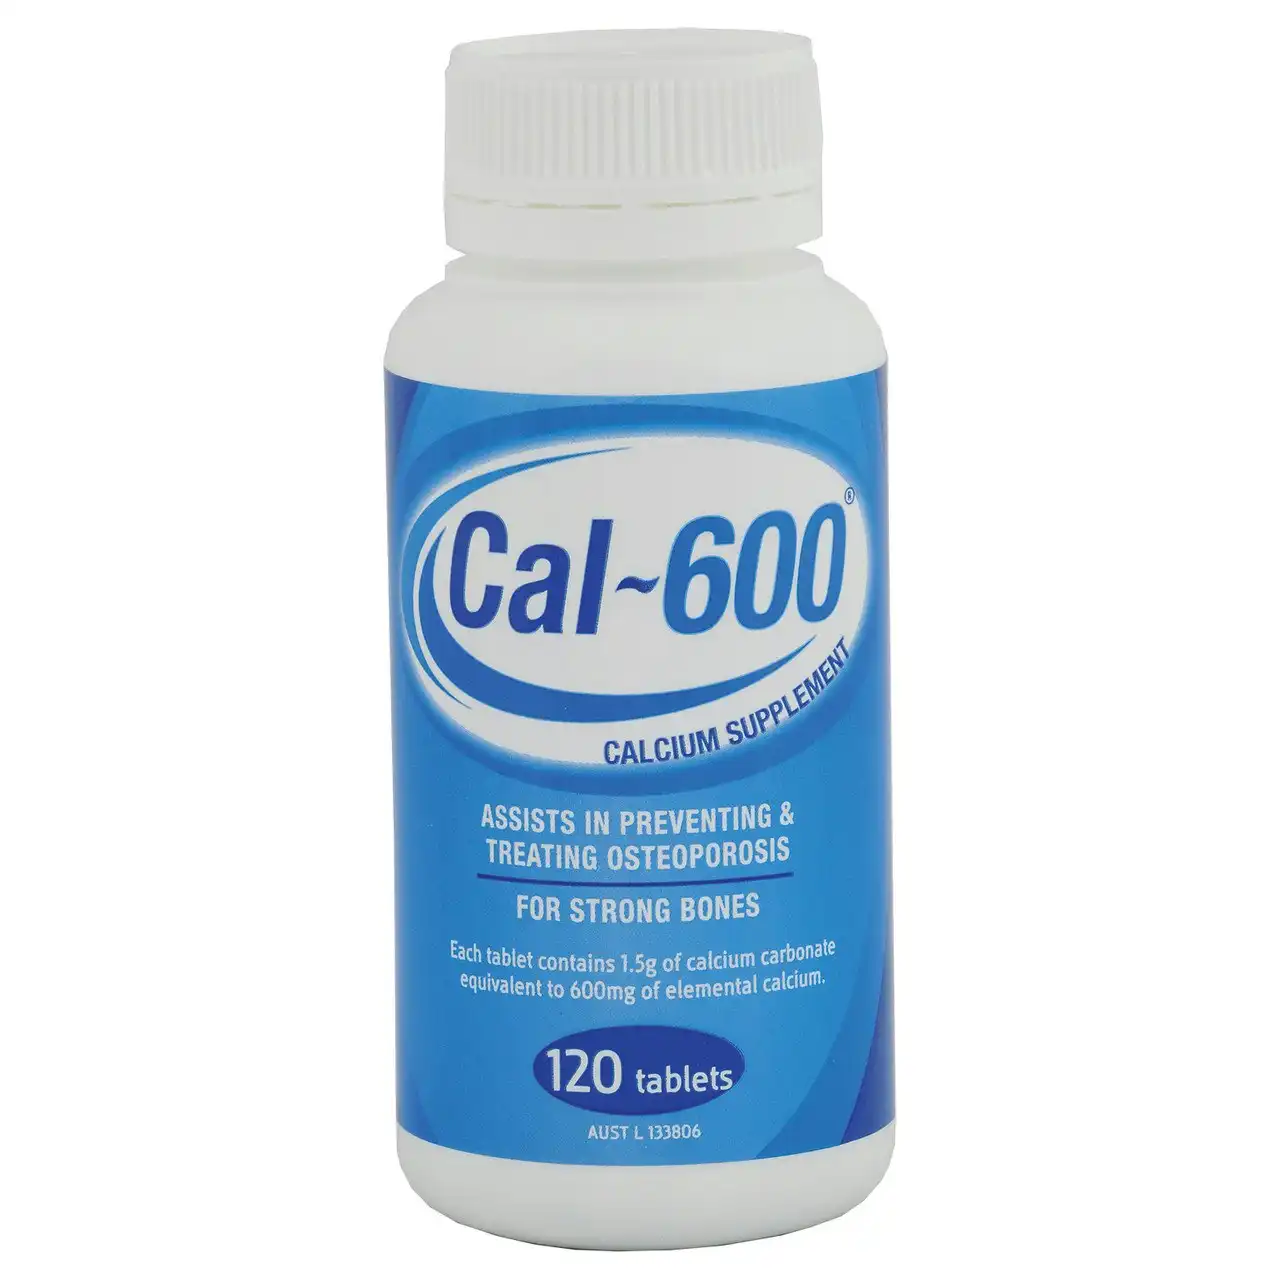 Cal-600